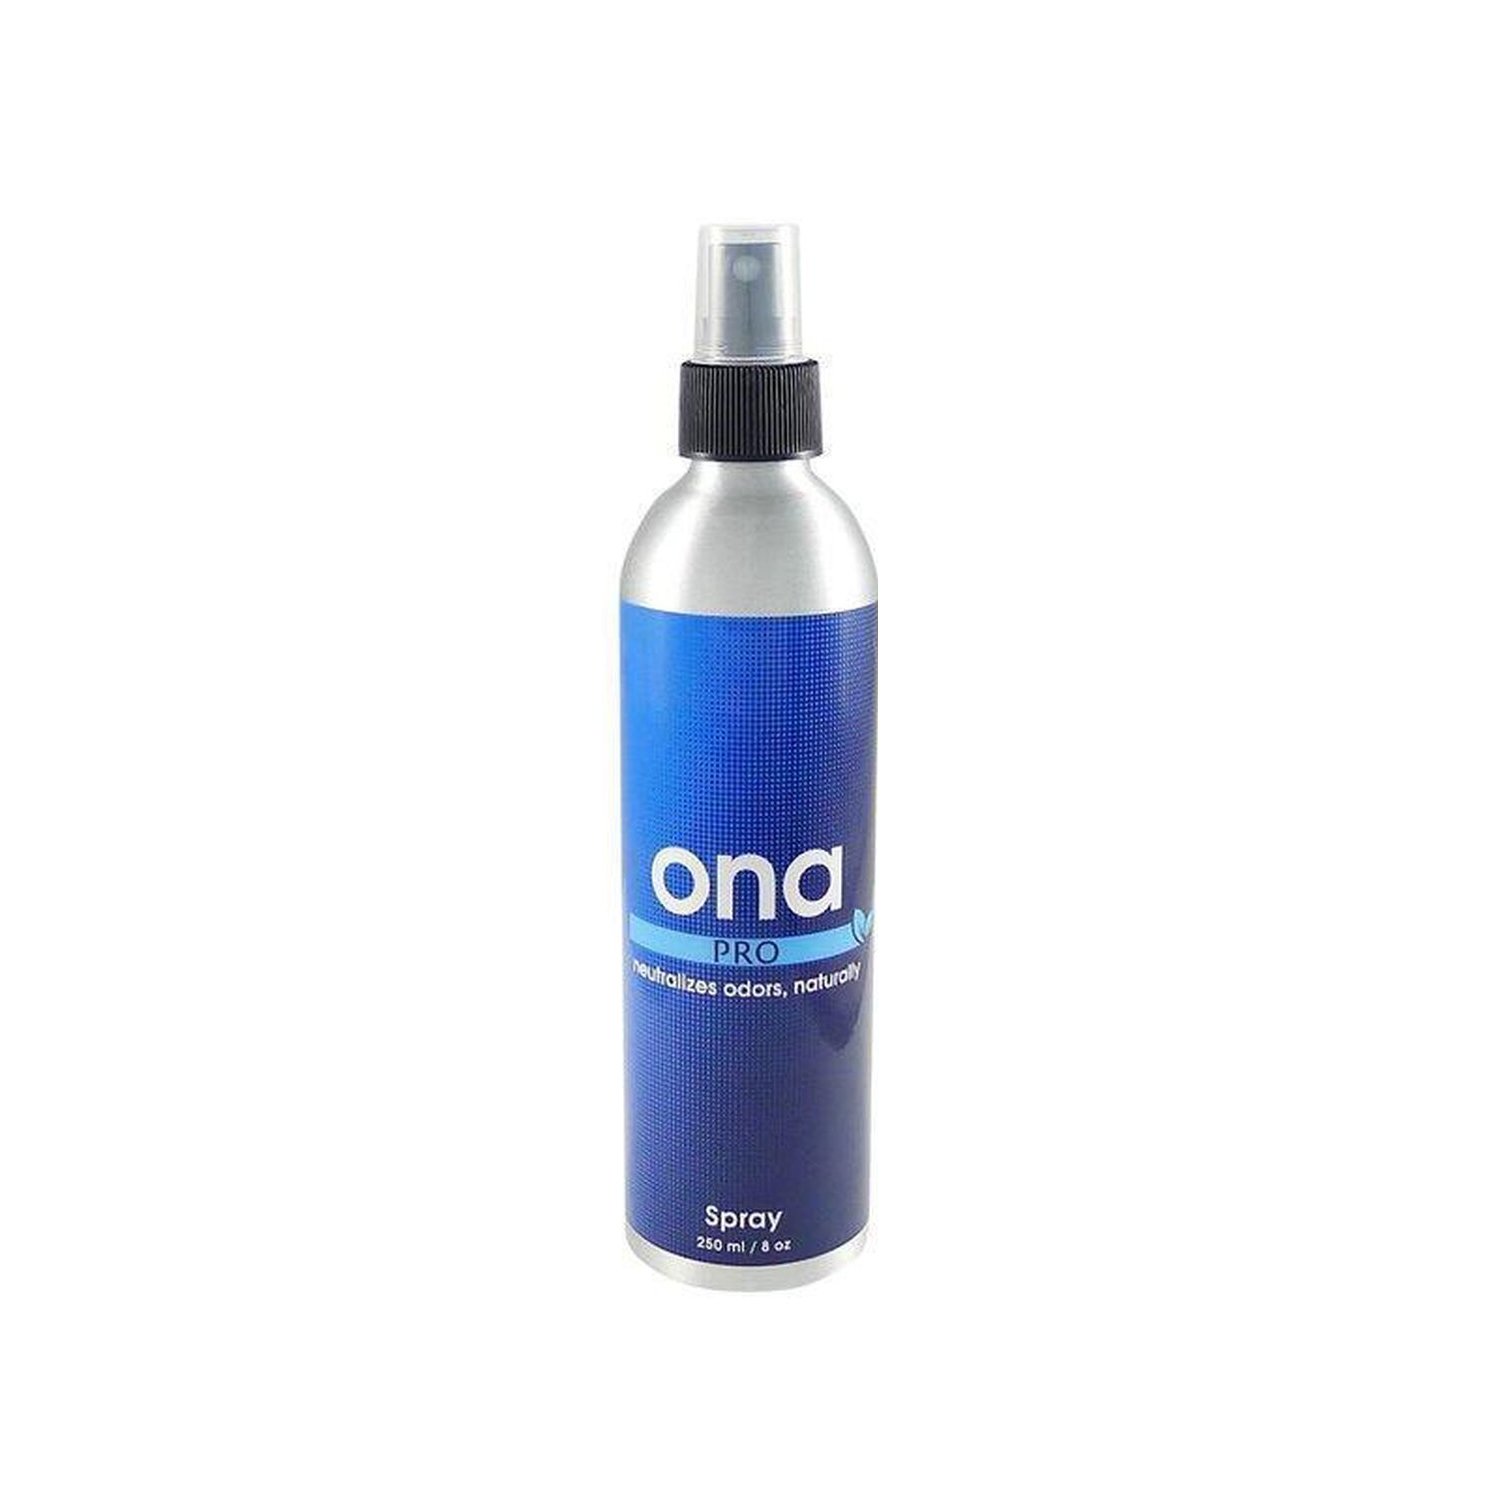 Ona Spray Pro unter Luft & Wasser > Geruchsneutralisierung